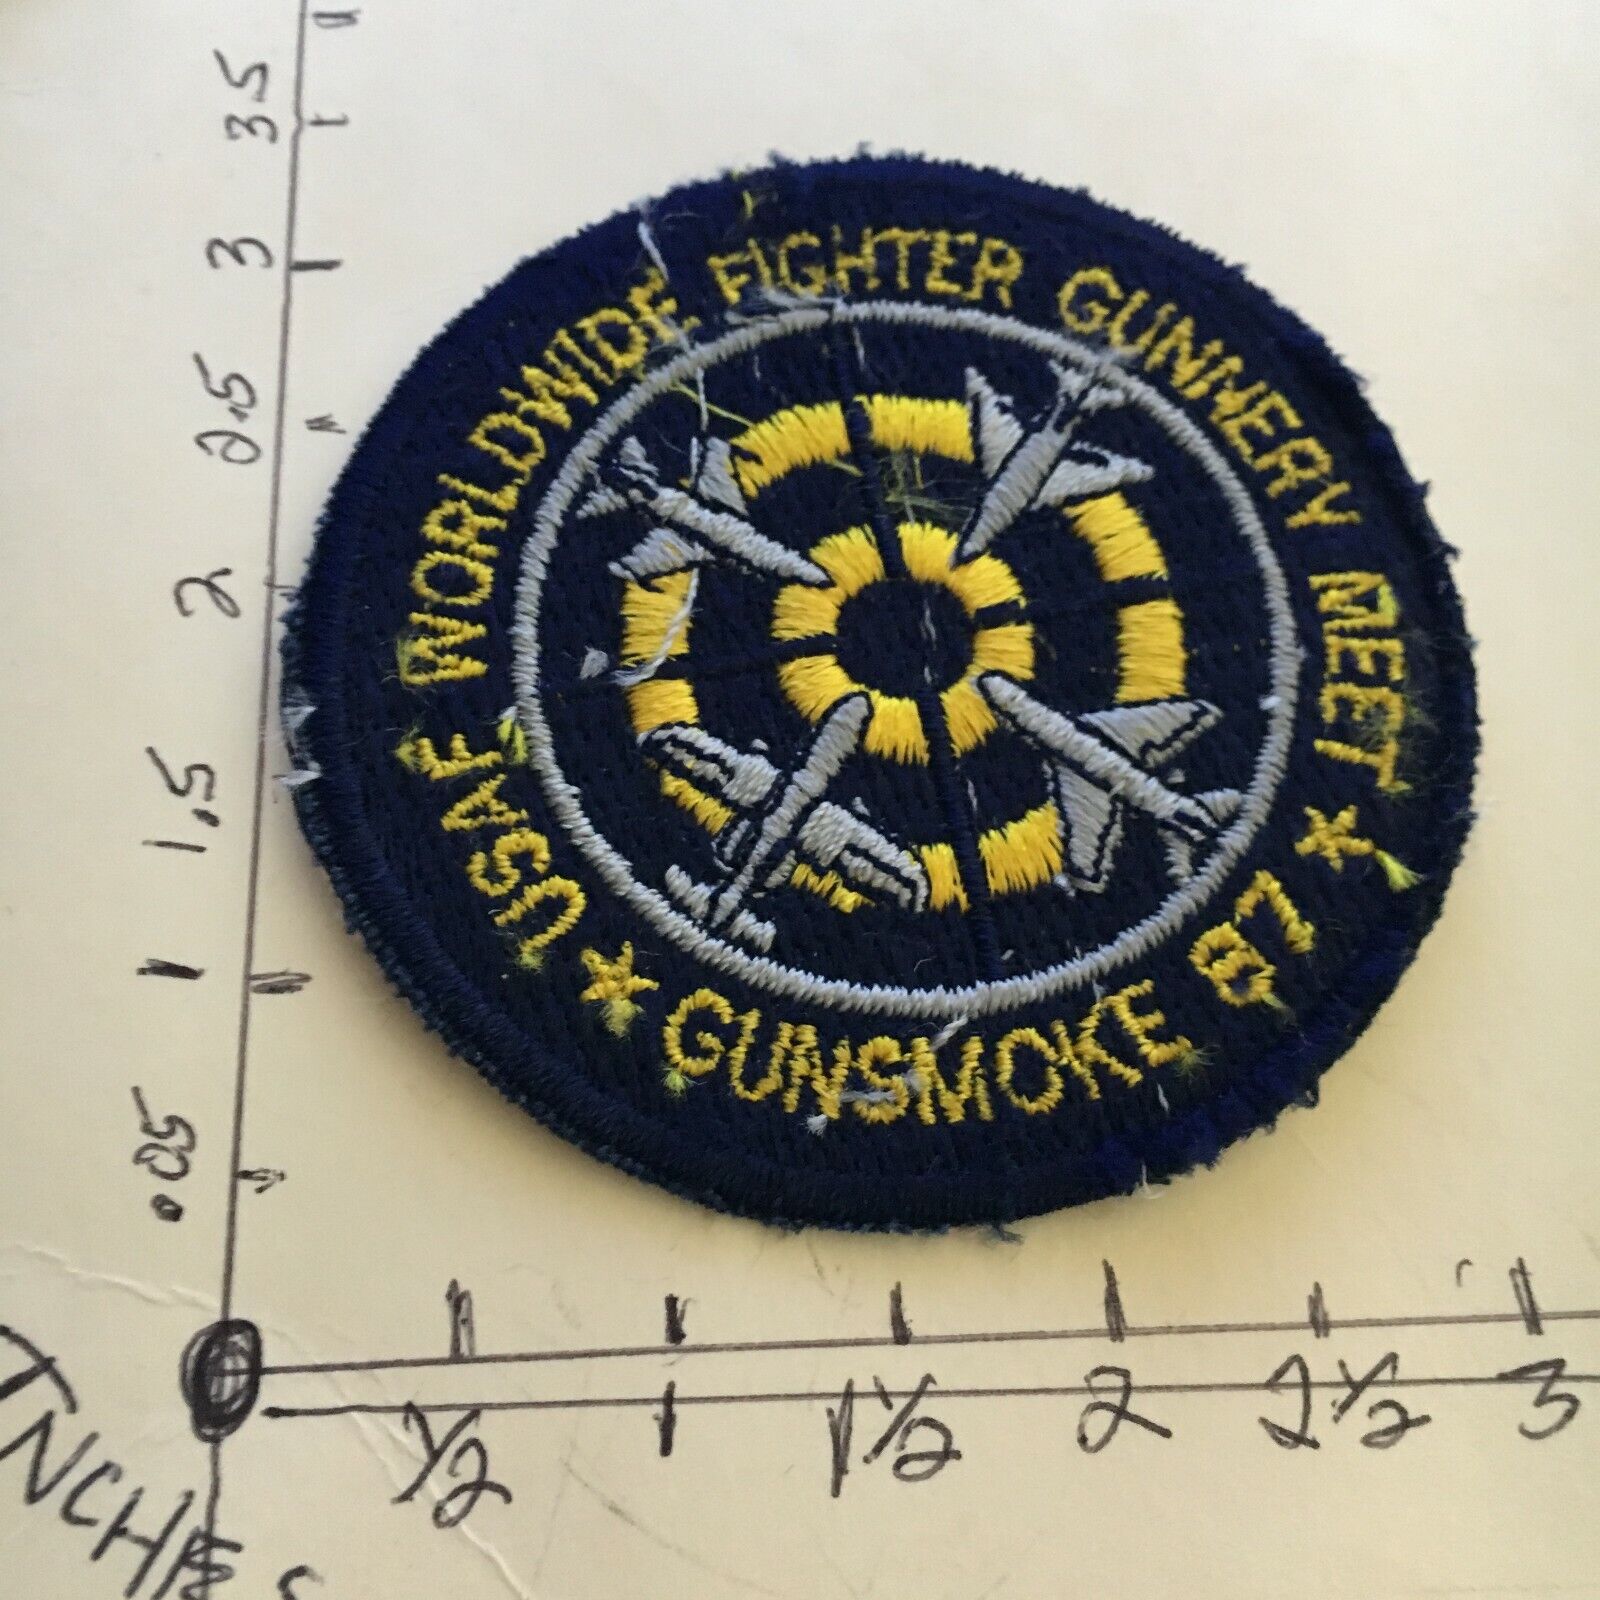 USAF WORLDWIDE FIGHTER GUNNERY MEET GUNSMOKE 1987 PATCH 5/22